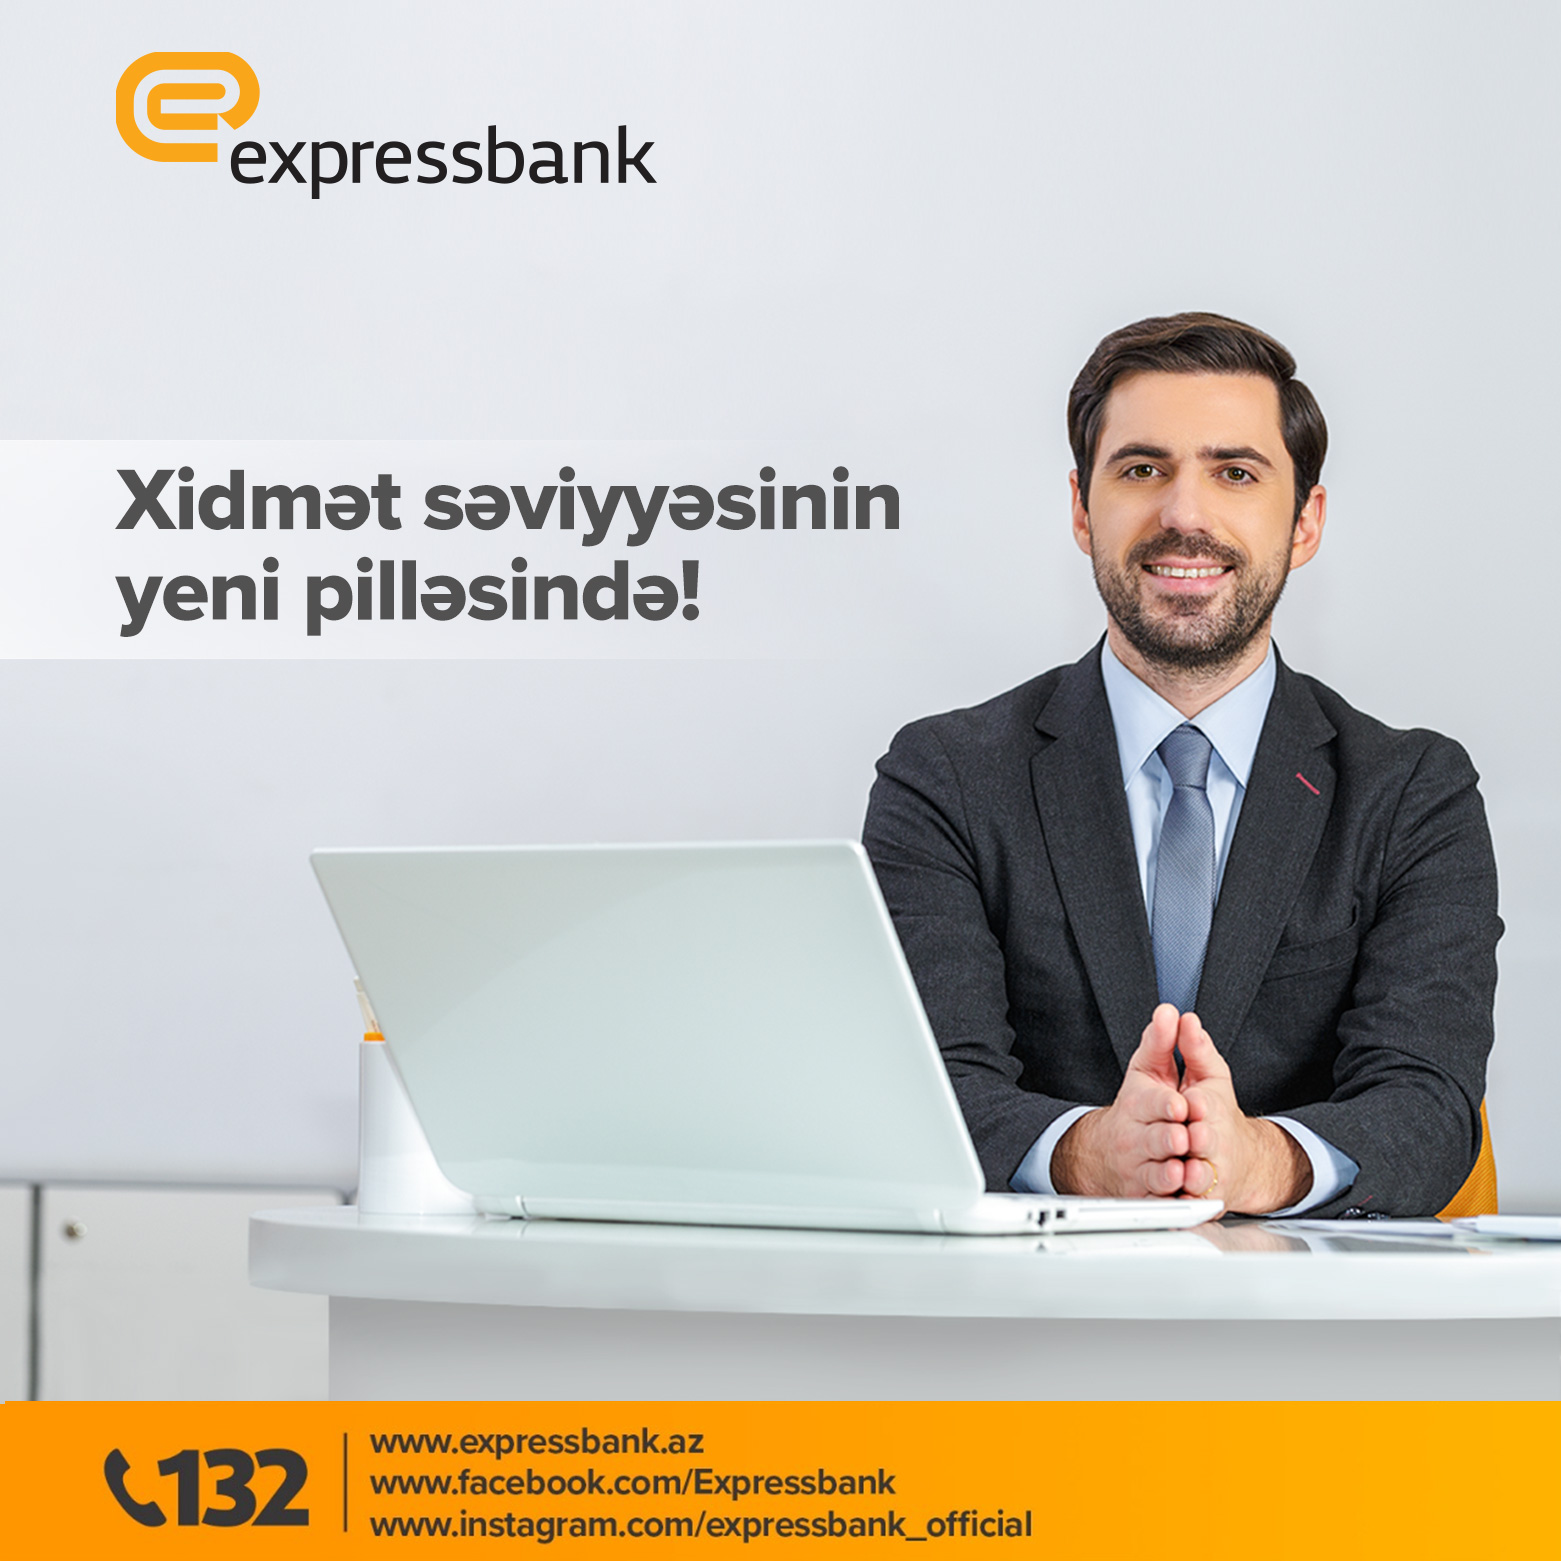 Expressbank xidmət səviyyəsini yeni pilləyə qaldırdı